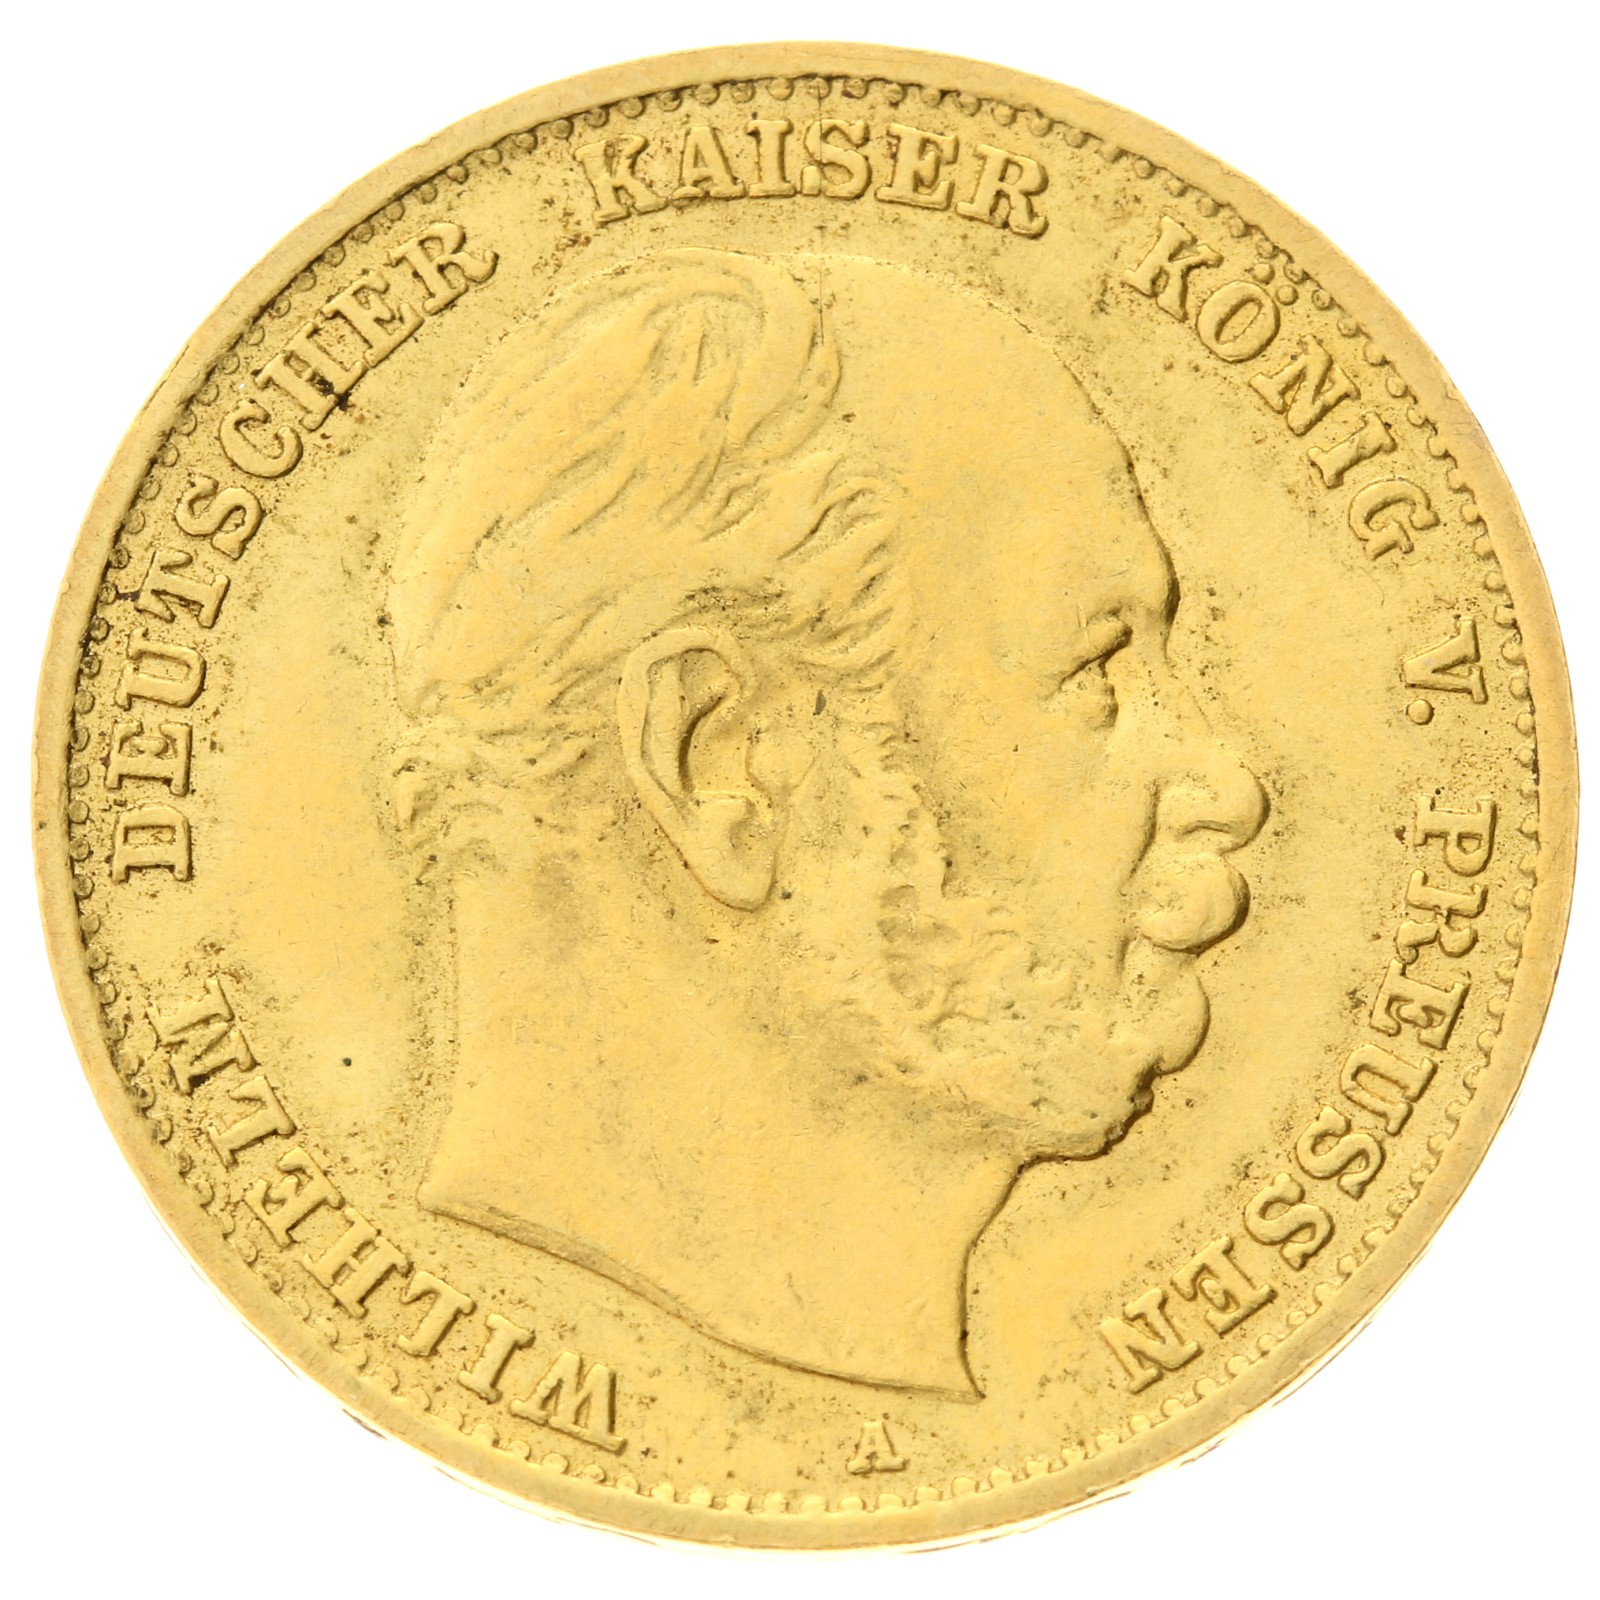 Germany - Prussia - 10 mark - 1877 - 'Wilhelm I'